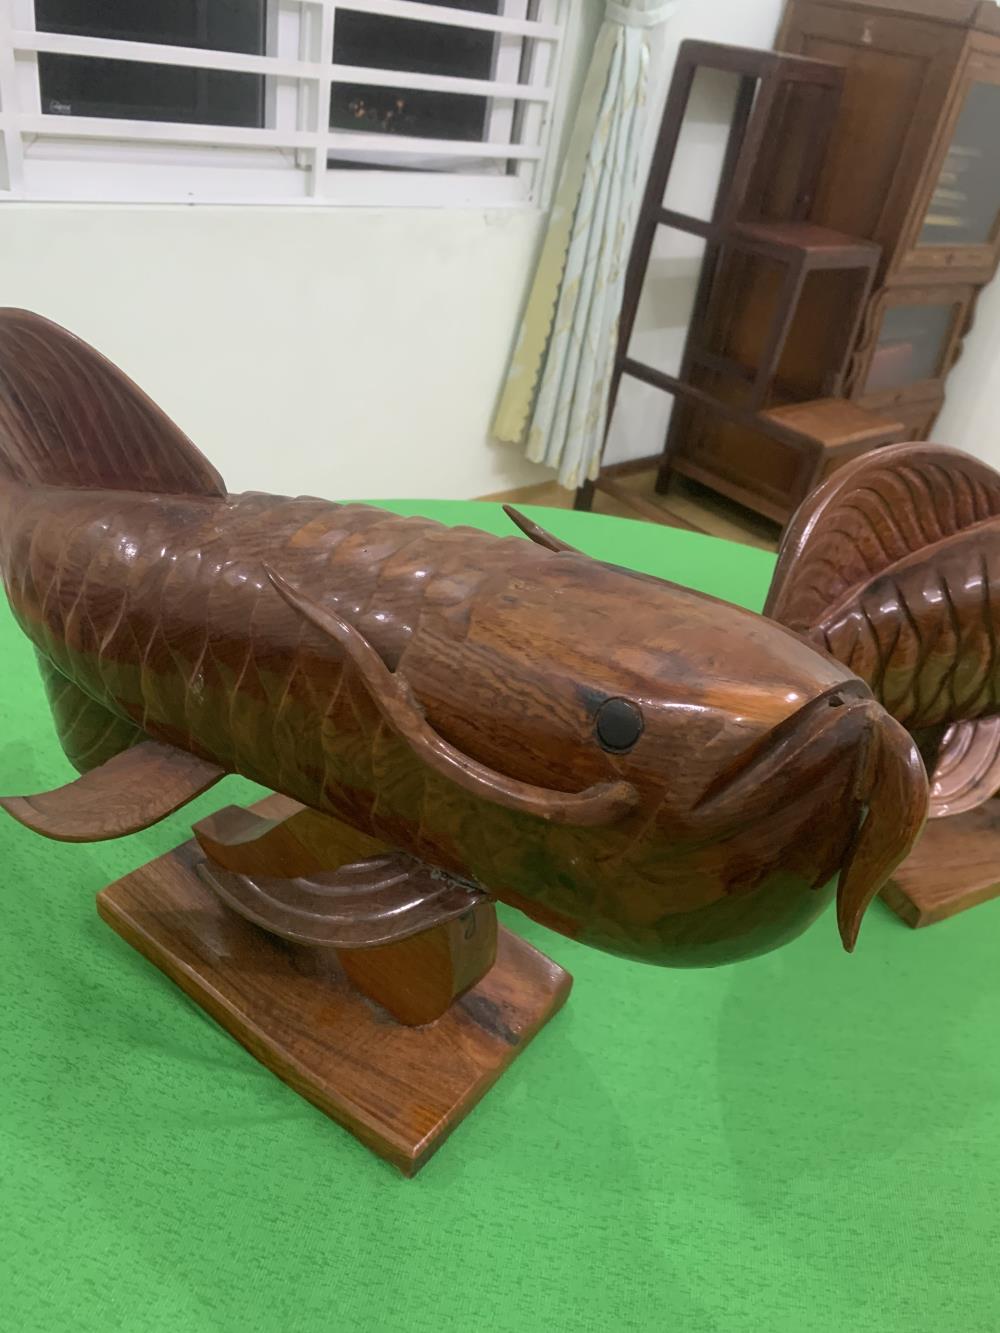 Bán cặp cá rồng,gỗ nhóm 1,dài 70cm,nặng 6kg/con1365371